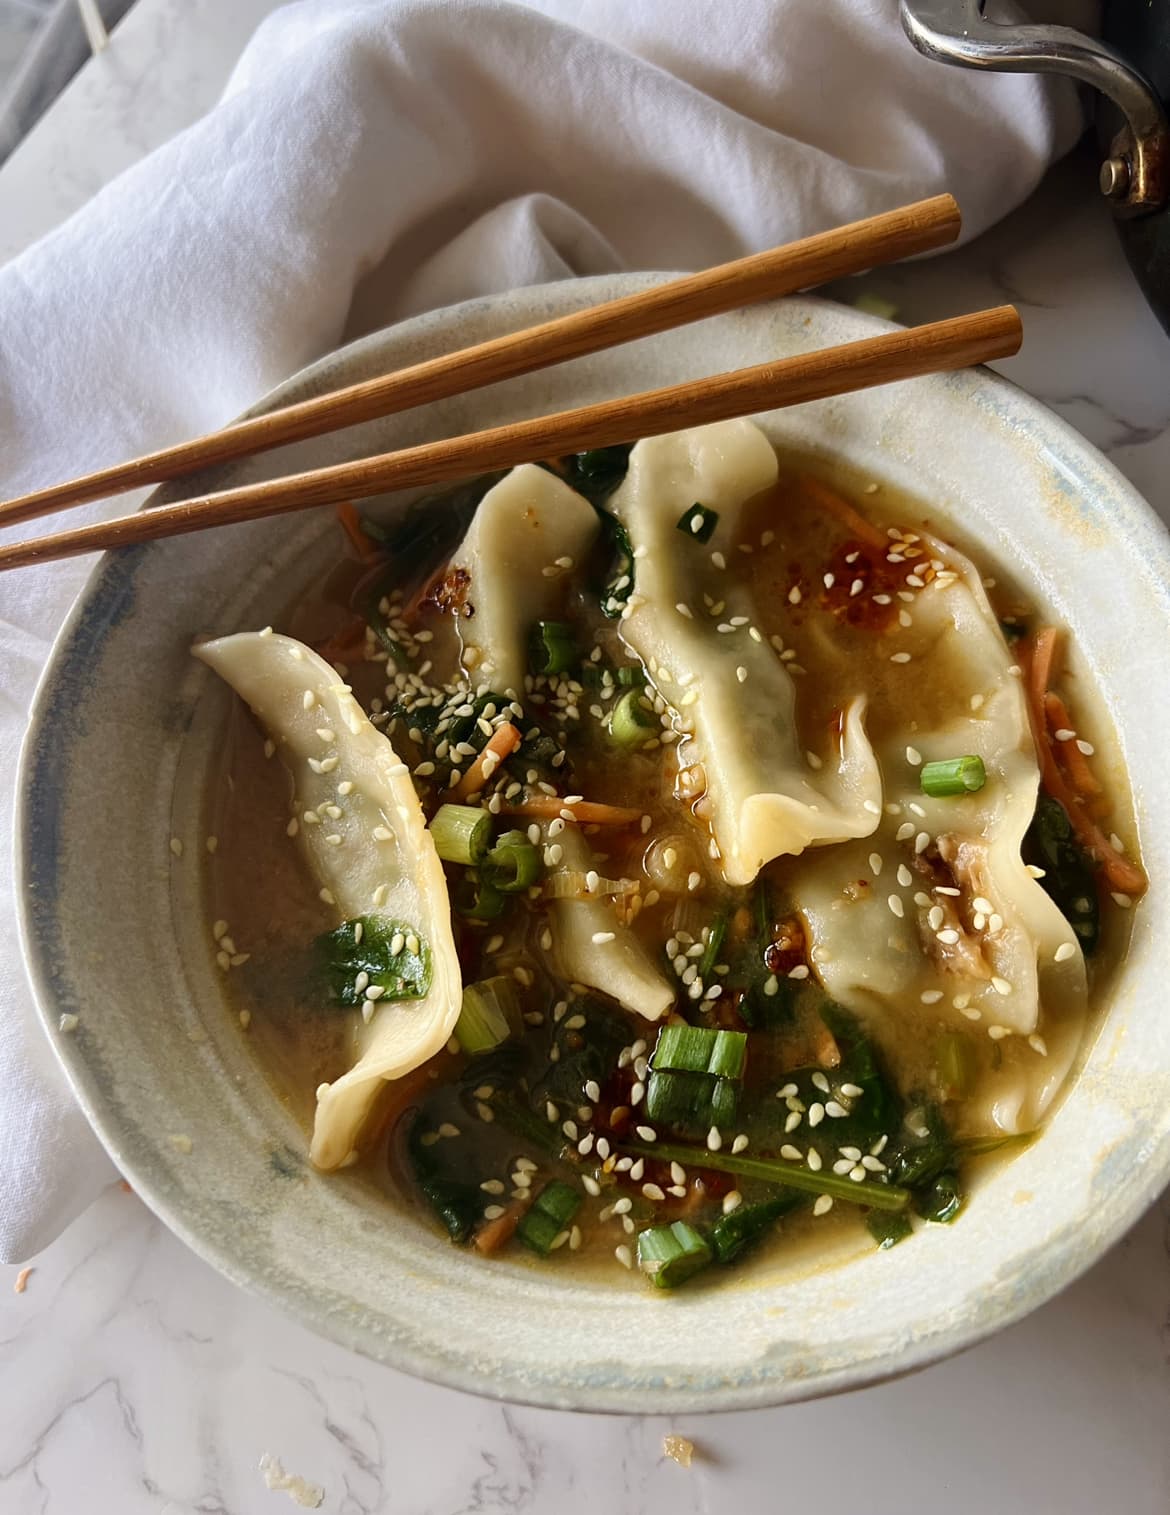 Best Soup Dumplings Recipe - How to Make Soup Dumplings